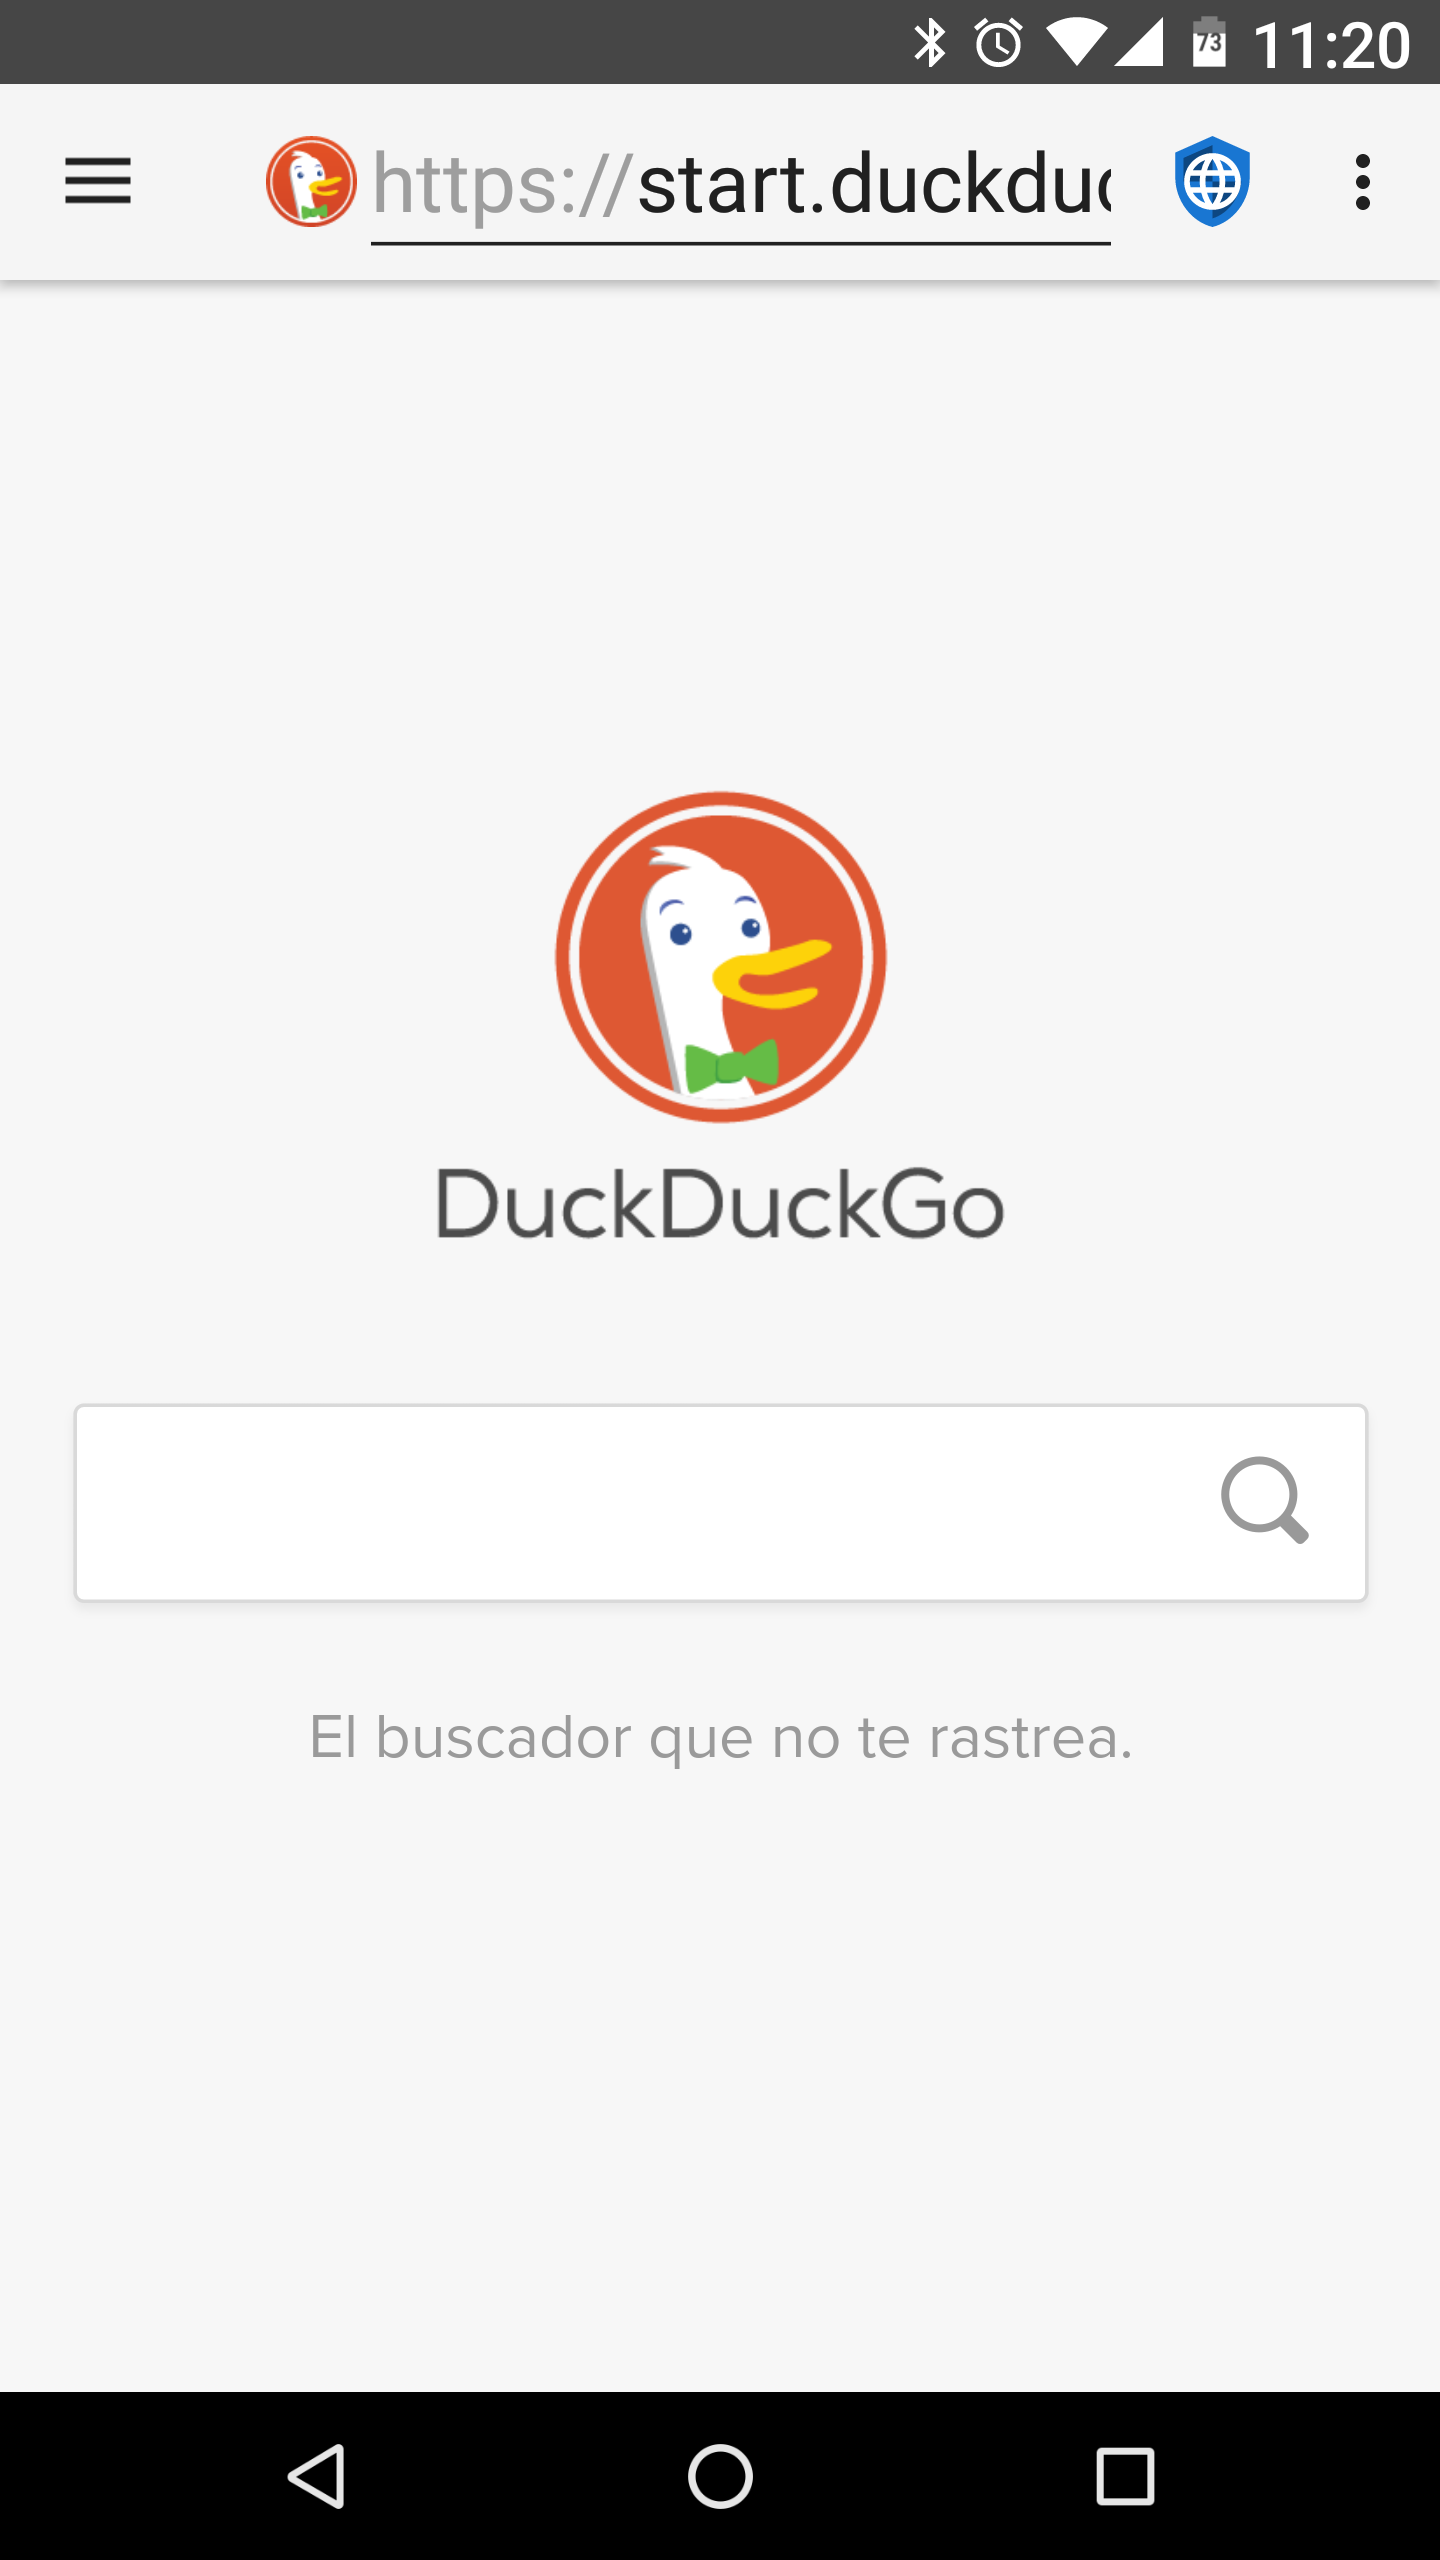 01 - DuckDuckGo - es.png